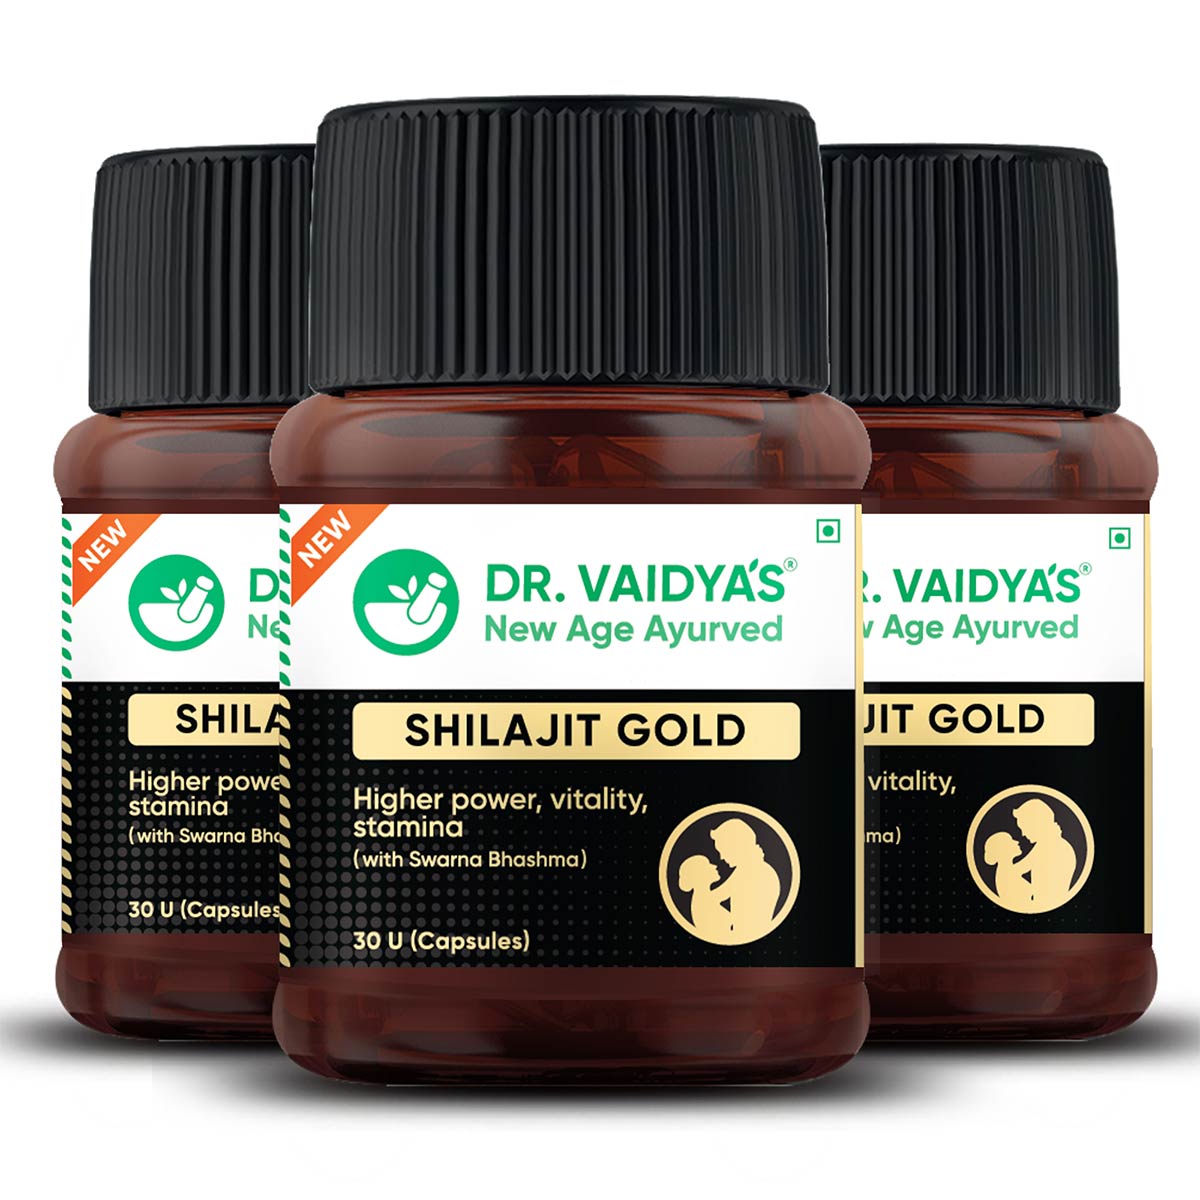 Dr. Vaidya's ShilajitGold